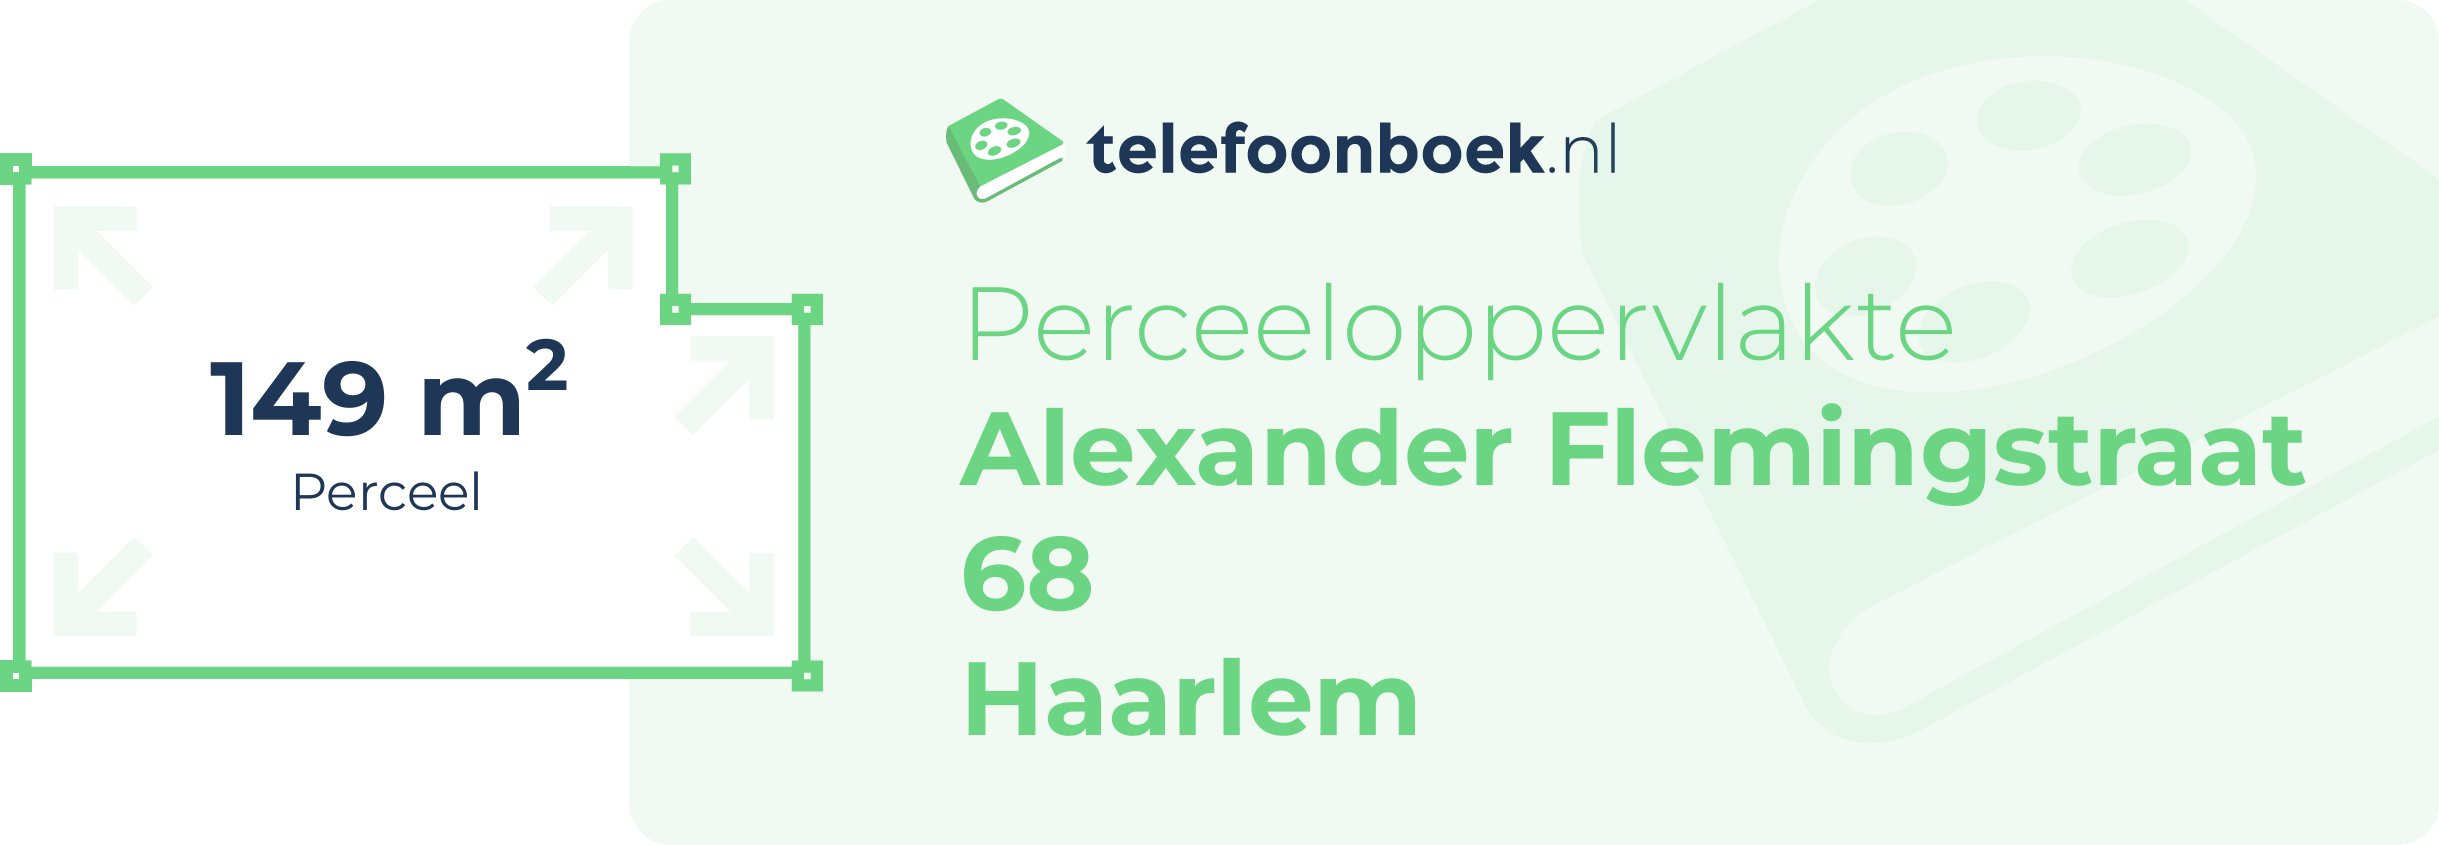 Perceeloppervlakte Alexander Flemingstraat 68 Haarlem